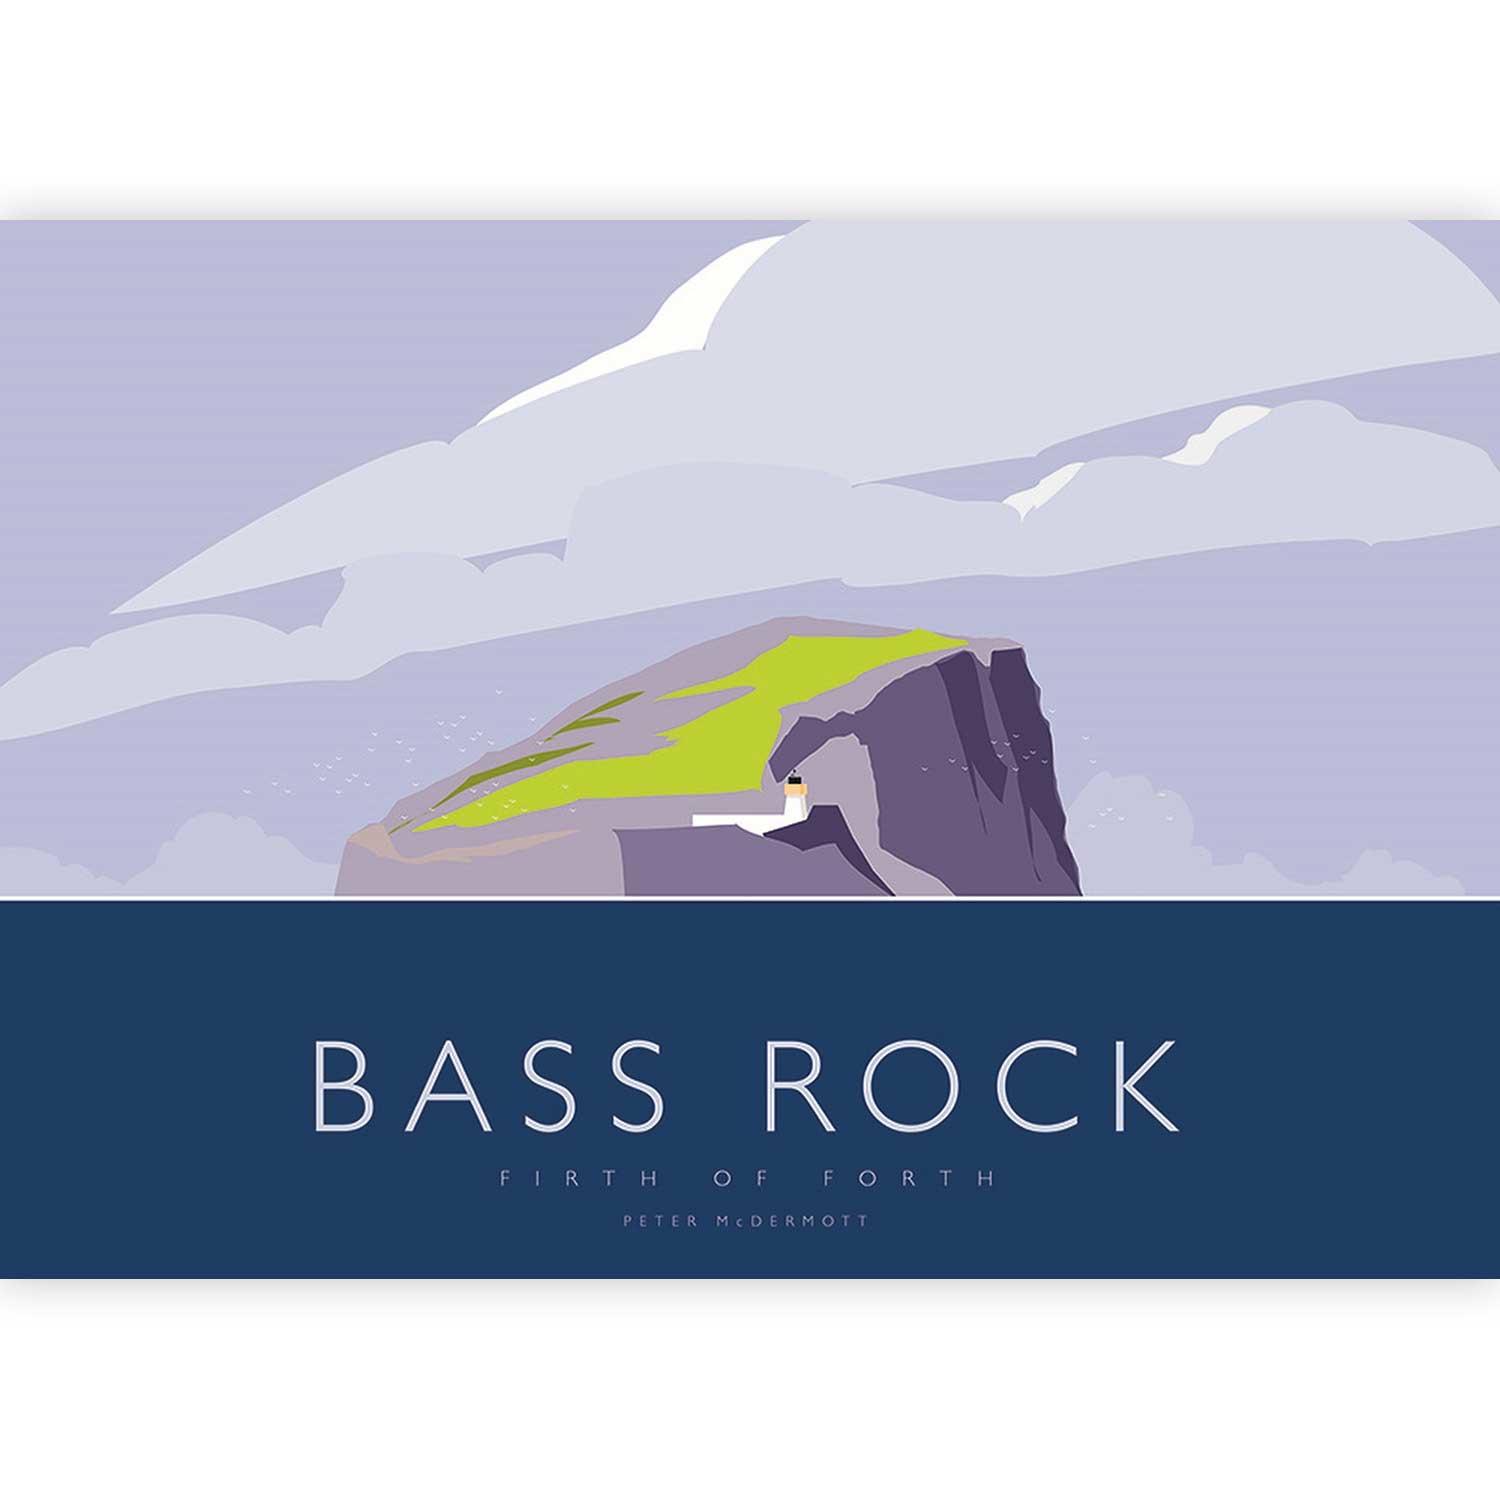 Bass Rock by Peter McDermott